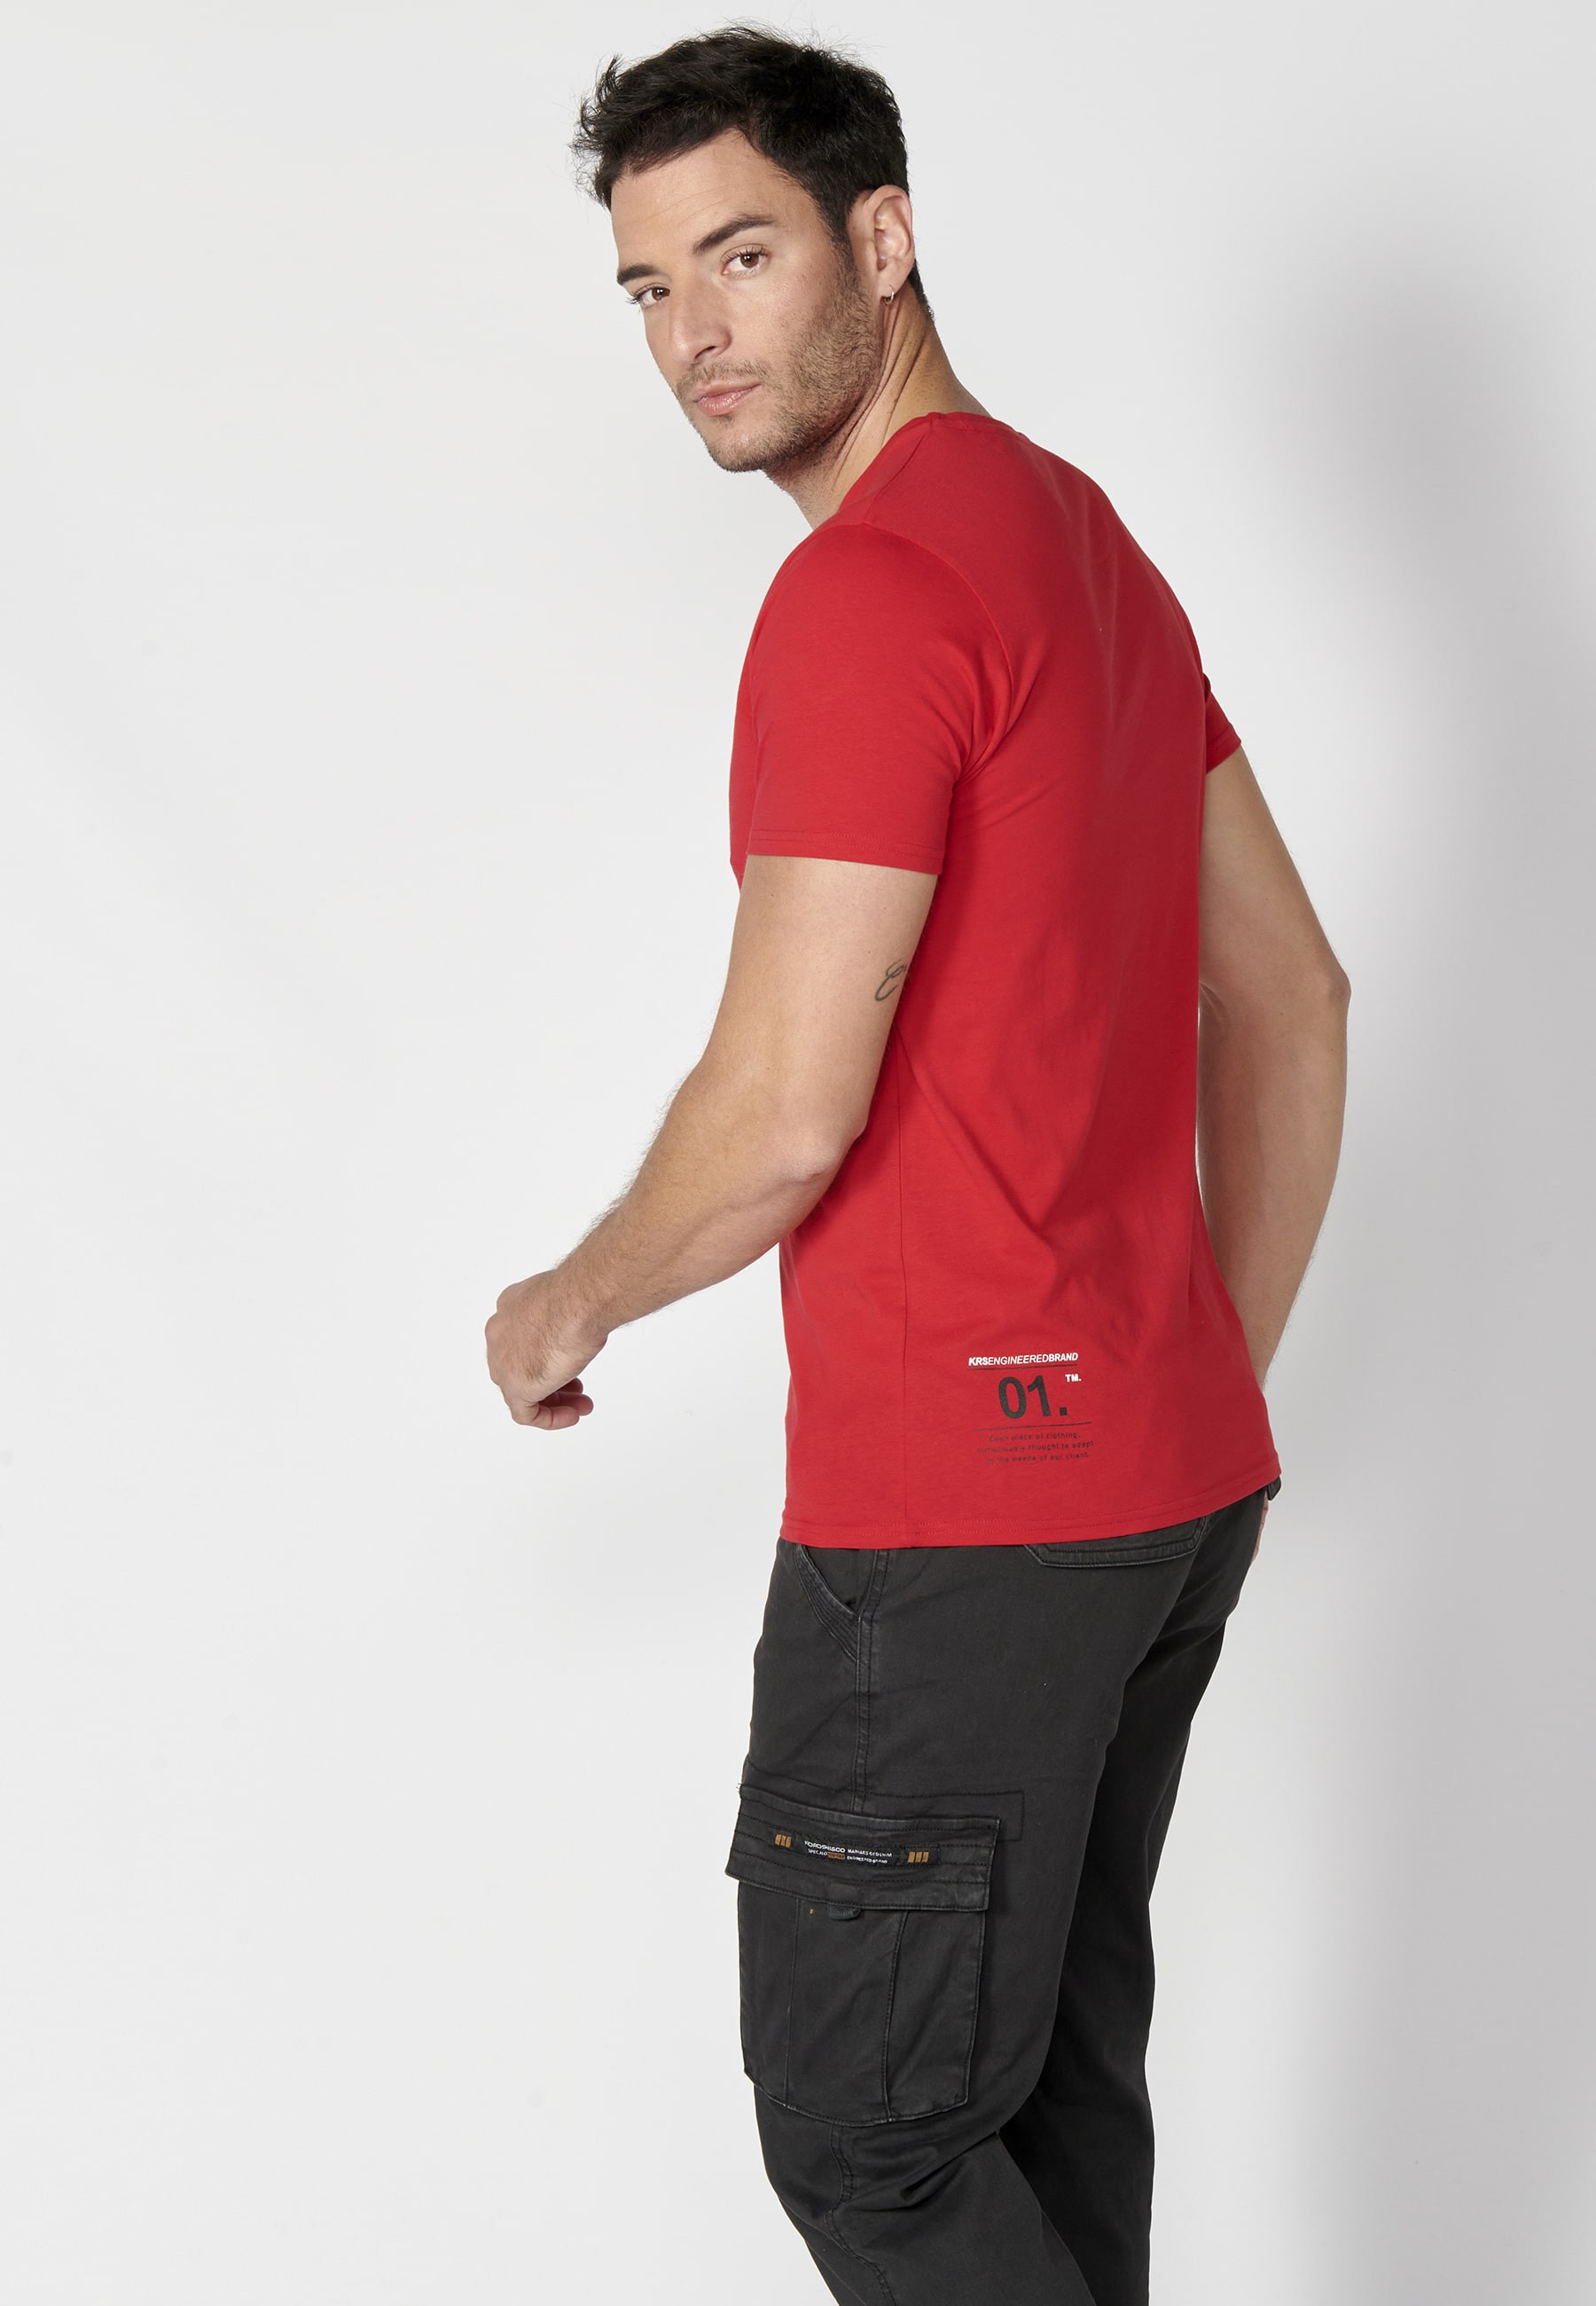 Camiseta manga corta de Algodón estampado delantero color Rojo para Hombre